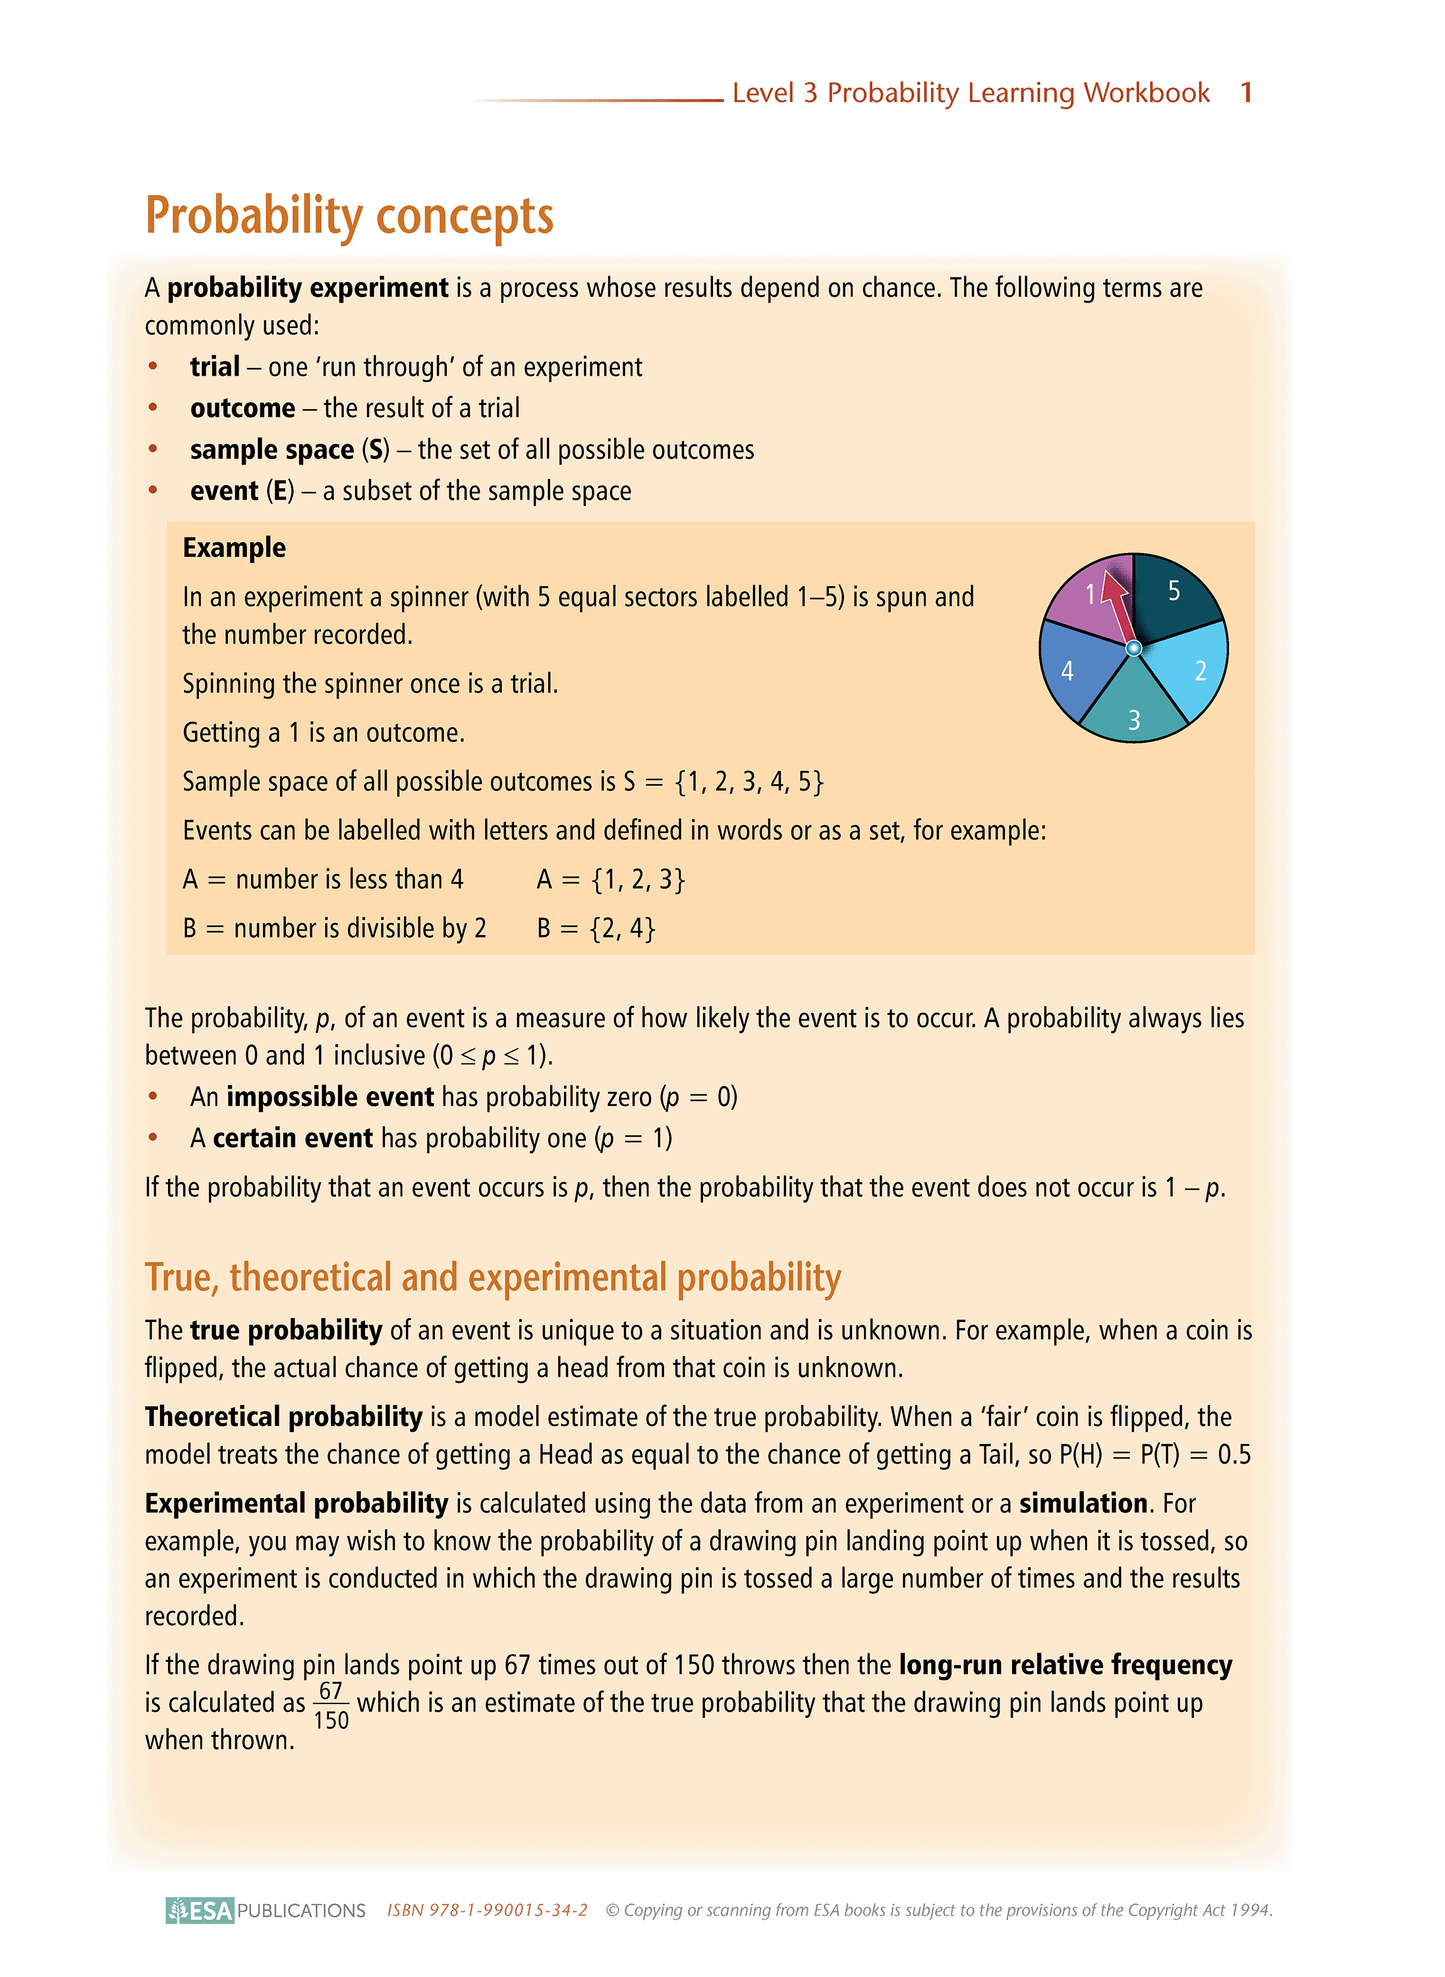 Level 3 Probability 3.13 Learning Workbook